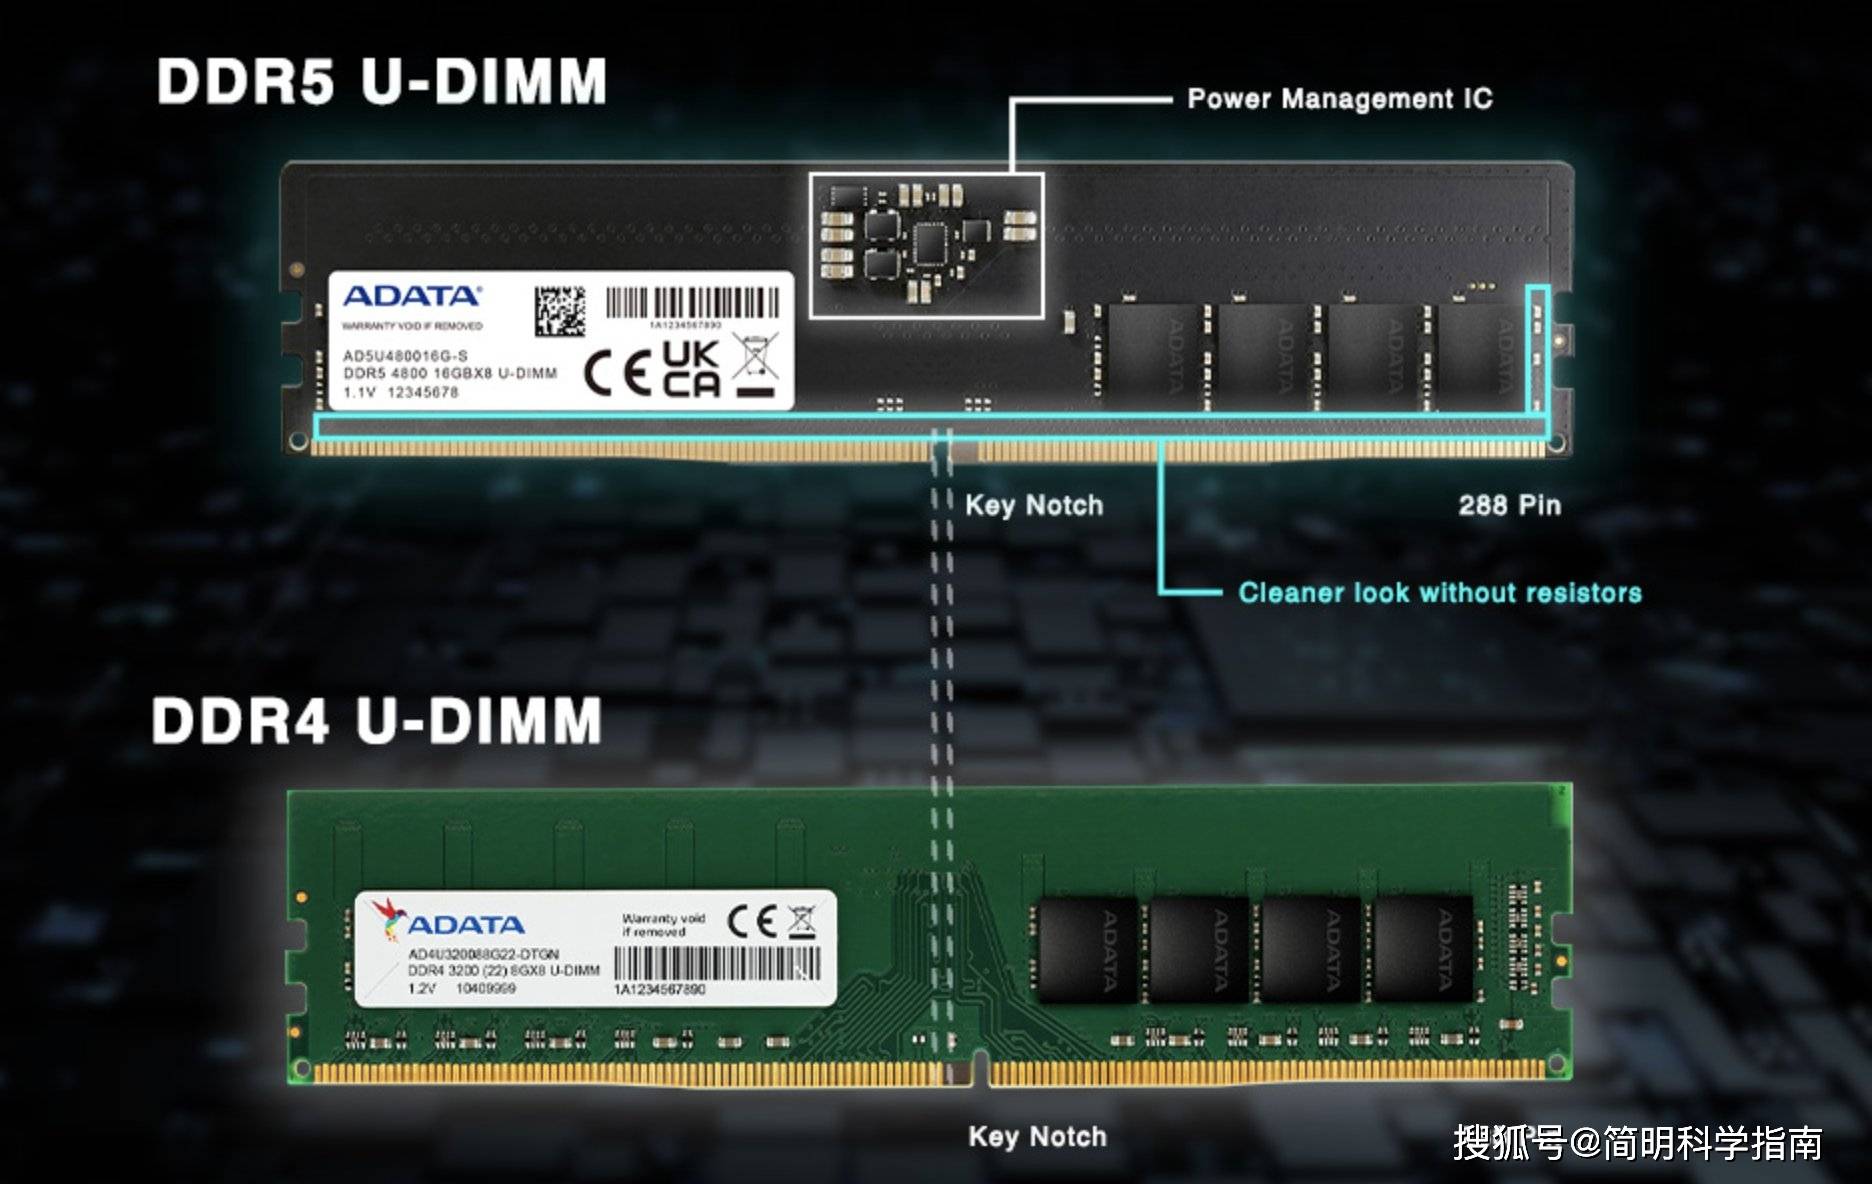 小米 5 内存之谜：DDR4 还是 DDR3？官方说明含糊其词引发猜疑  第3张